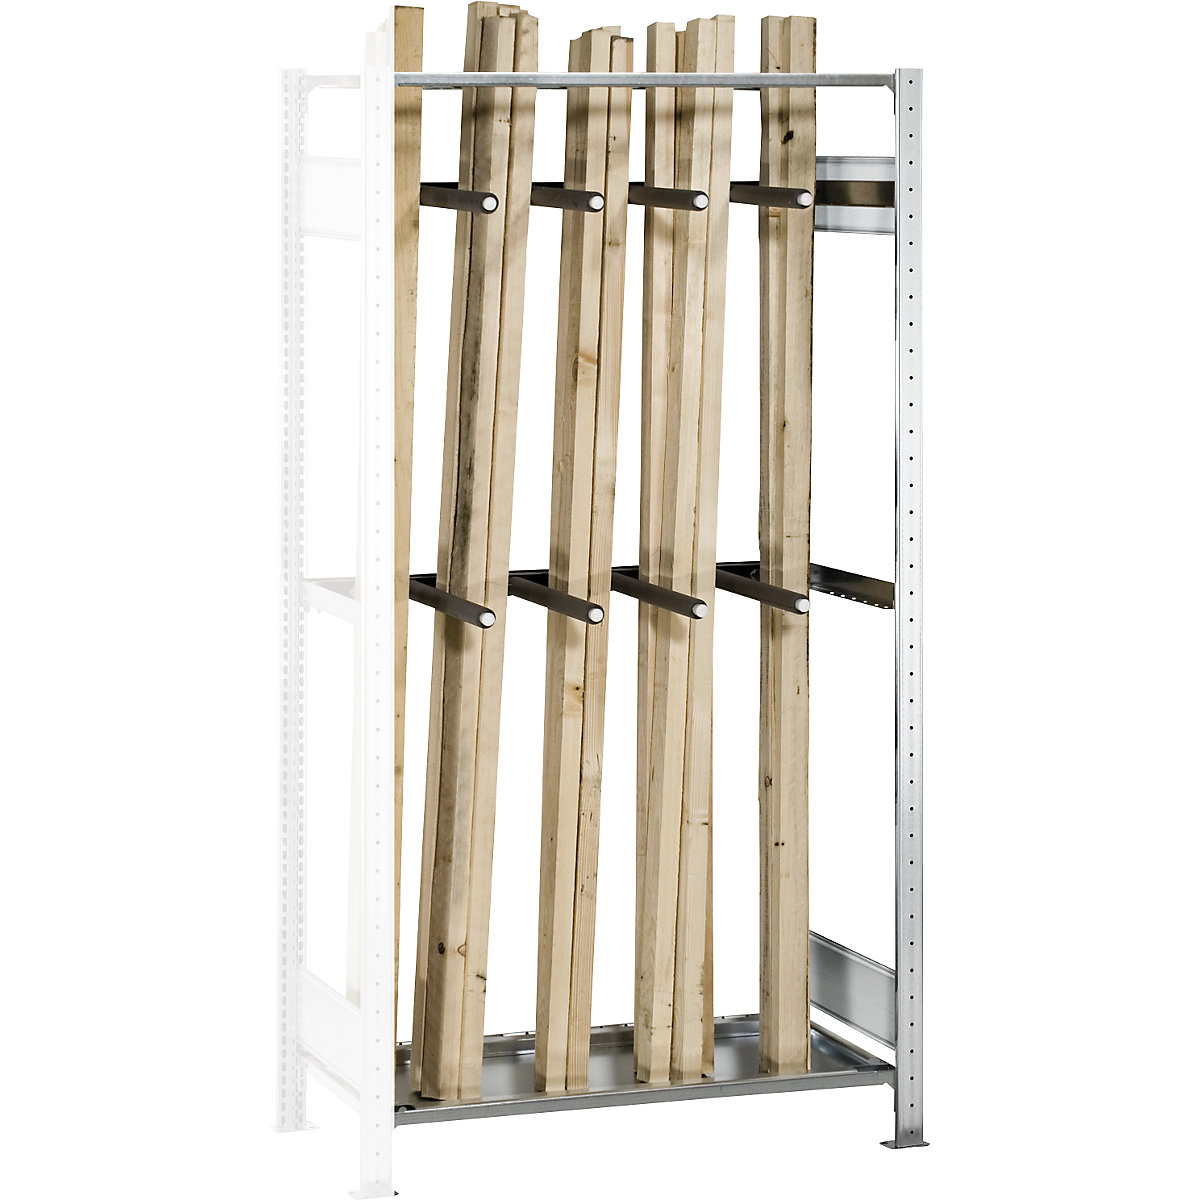 Long goods shelf unit – SCHULTE